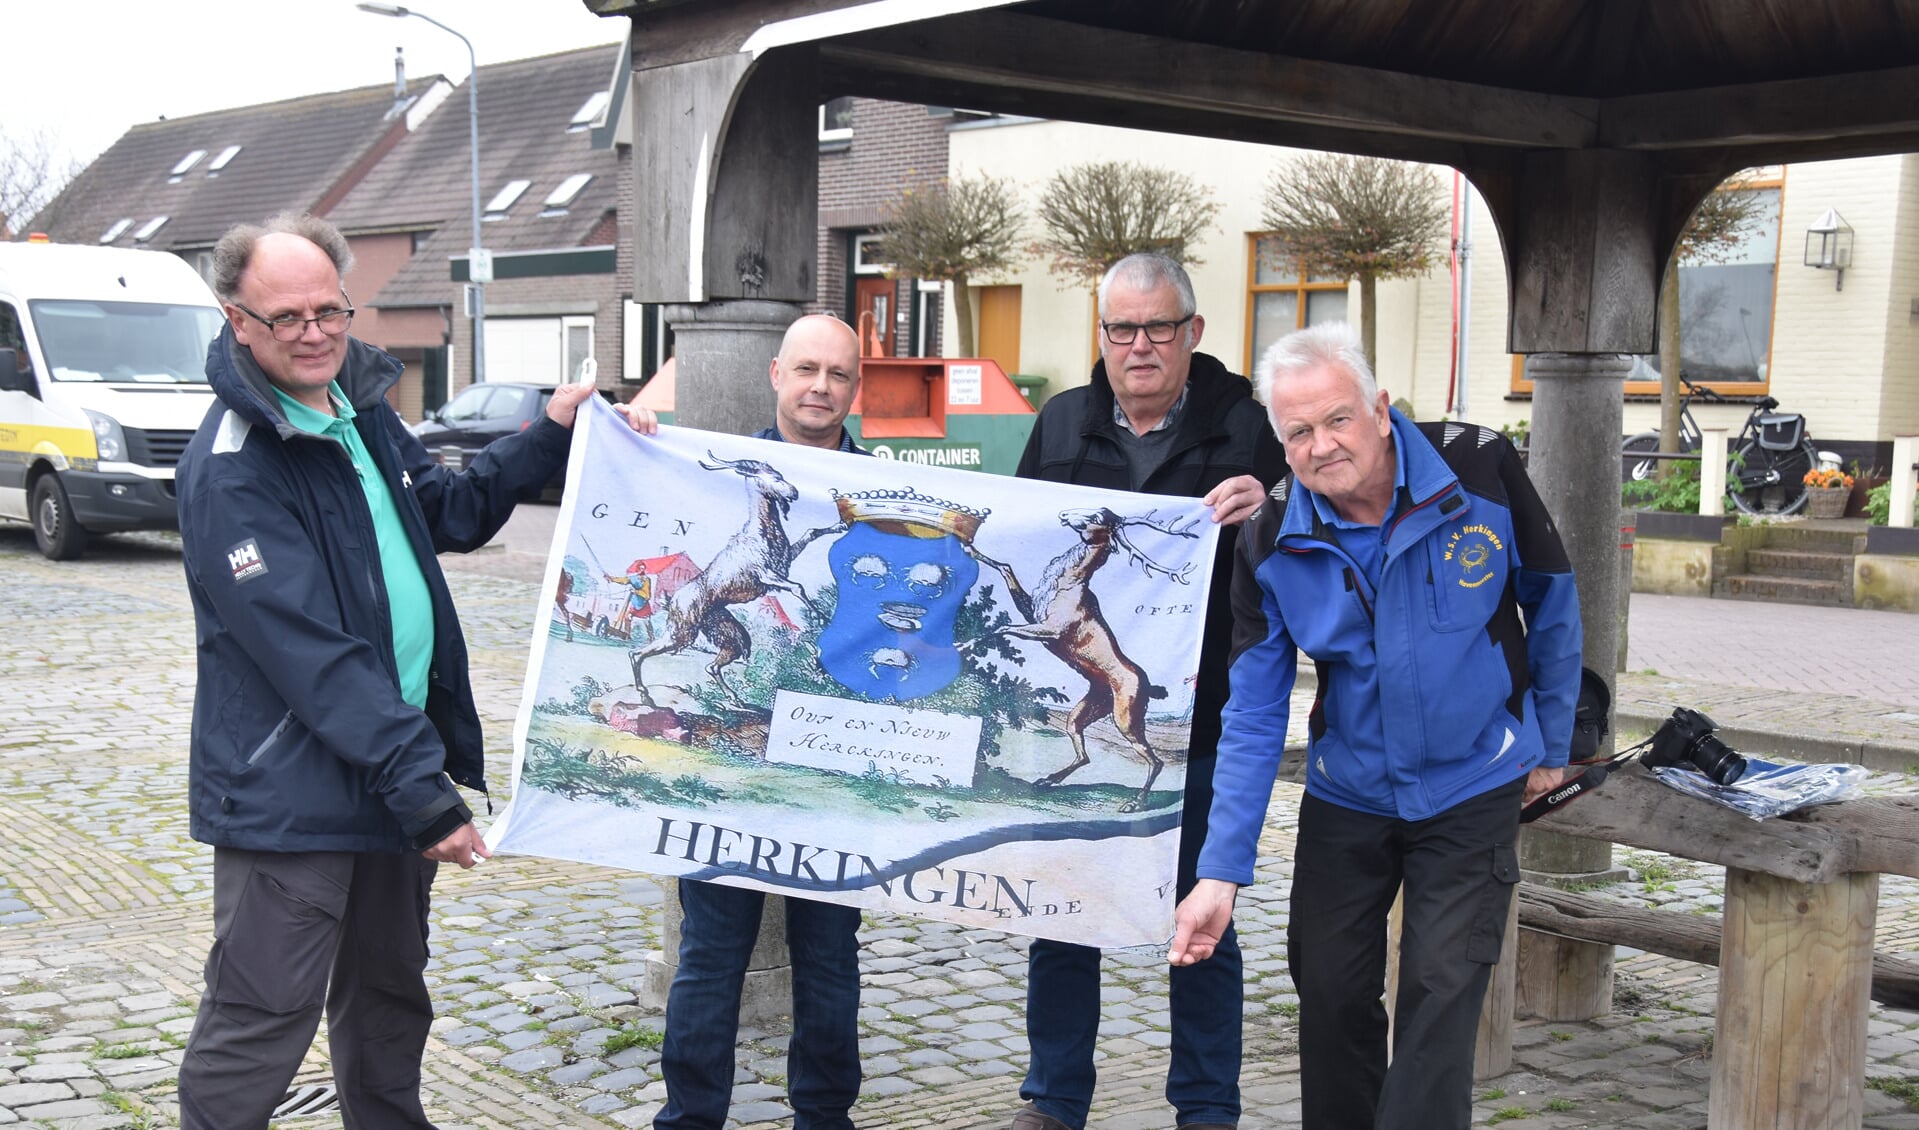 Leden van de Dorpsraad Herkingen, André van Beek en Adri Knöps (links en rechts in het midden) presenteren de nieuwe Herkingse vlag. Links Wim van Schilfgaarden van de Jachthaven en rechts Ad Zegers van de Watersportvereniging.